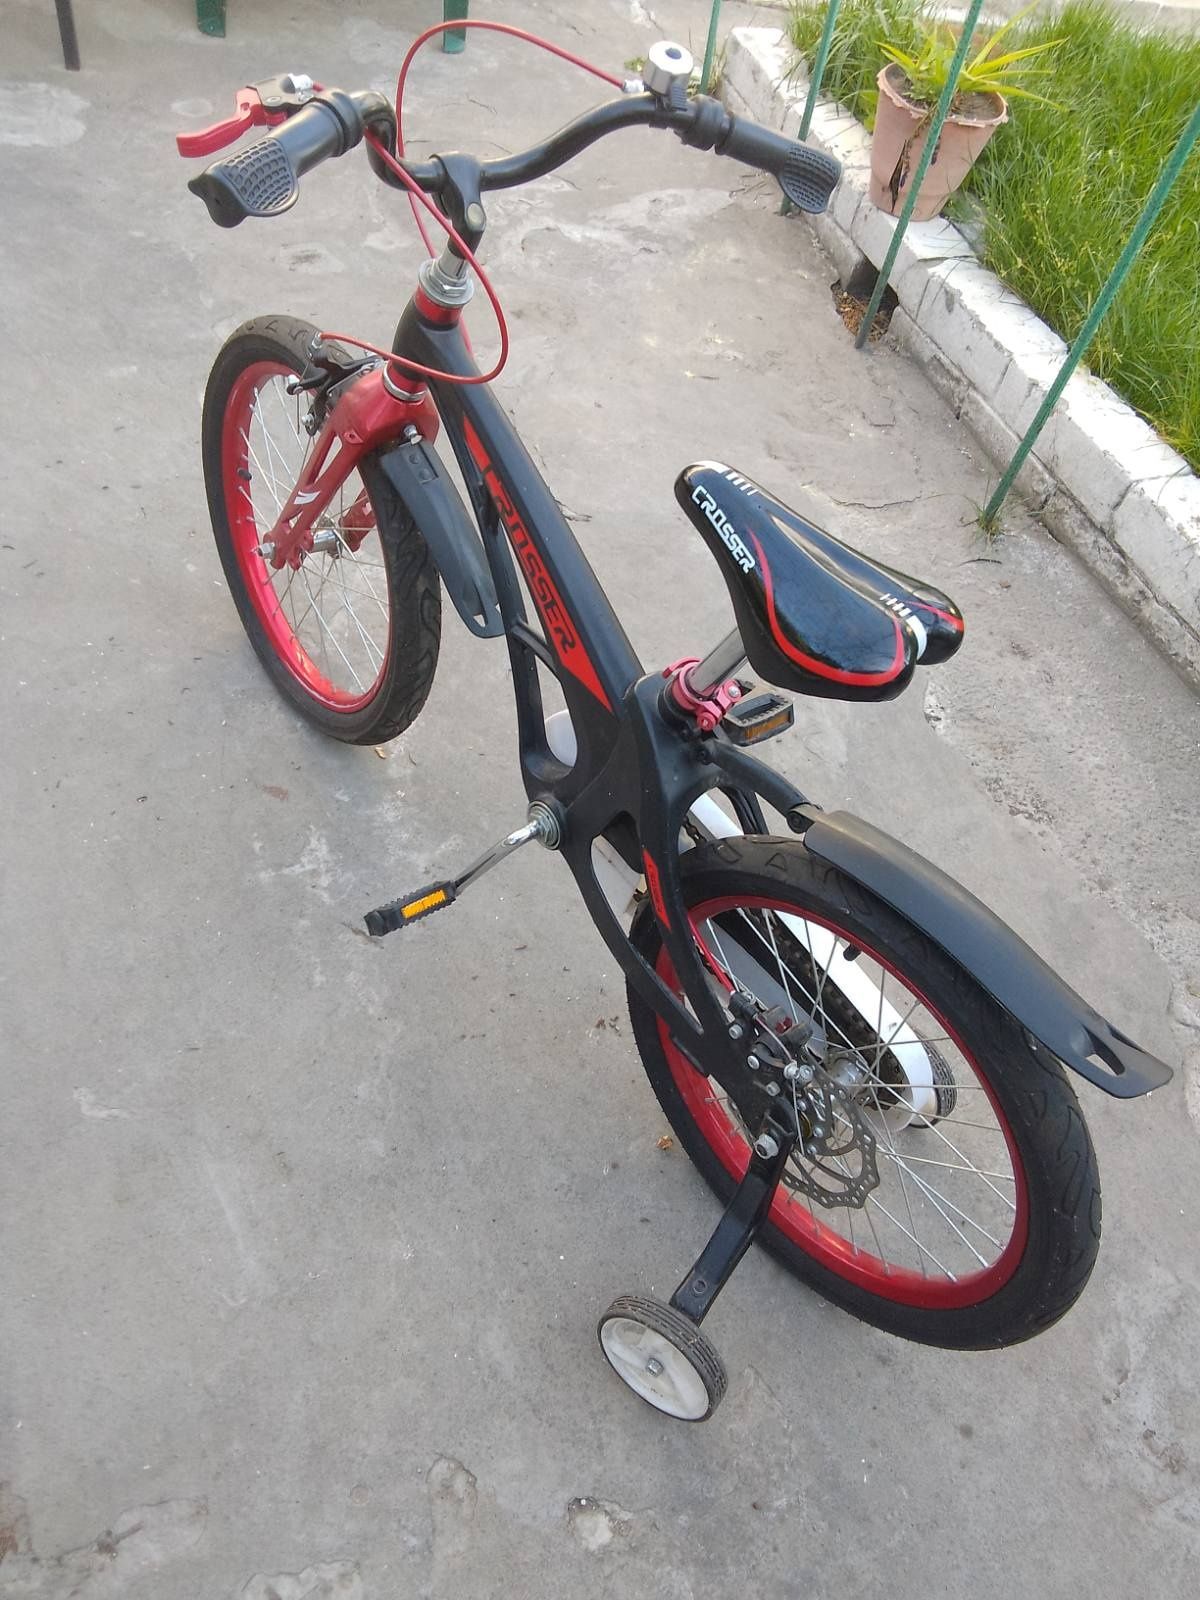 Велосипед детский Crosser